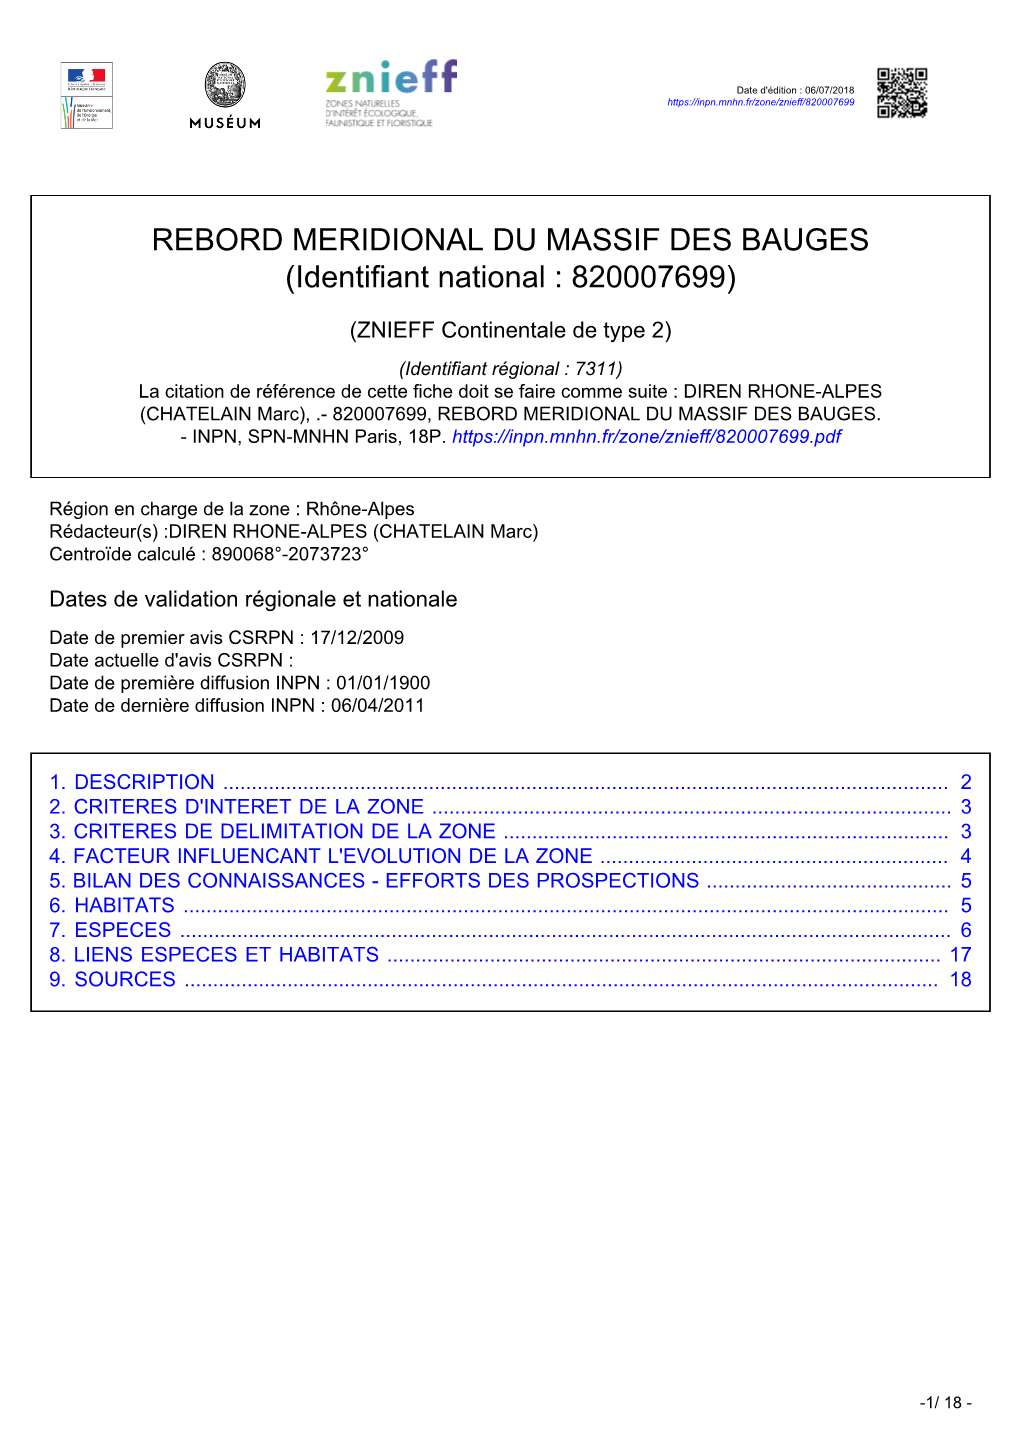 REBORD MERIDIONAL DU MASSIF DES BAUGES (Identifiant National : 820007699)